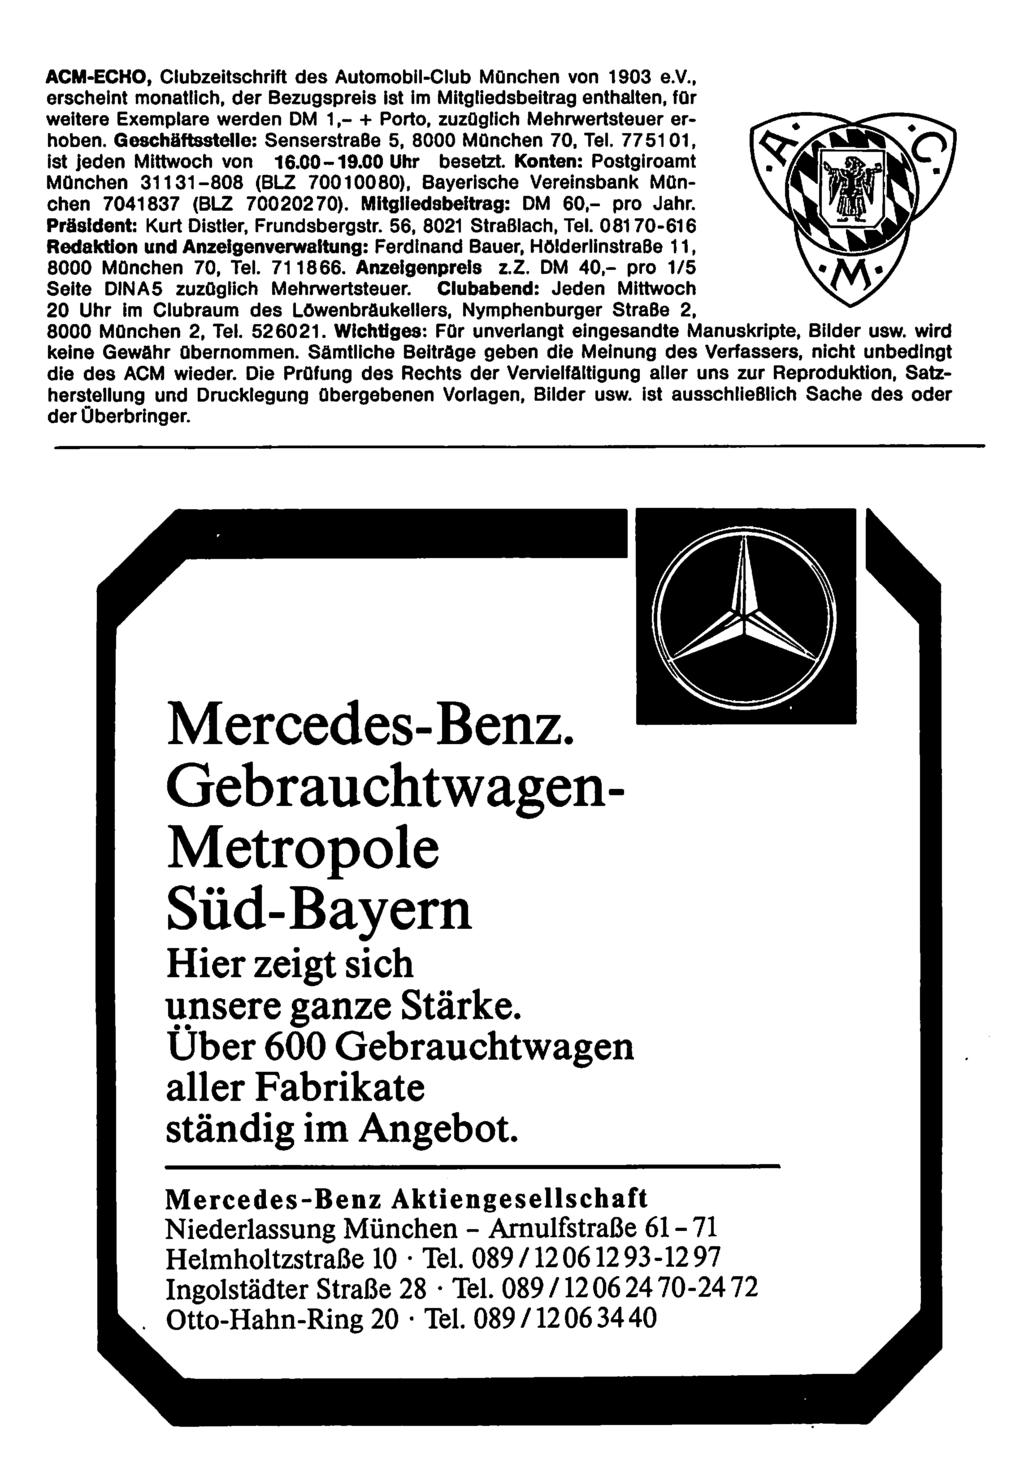 ACM-ECHO, Clubzeitschrift des Automobil-Club München vo